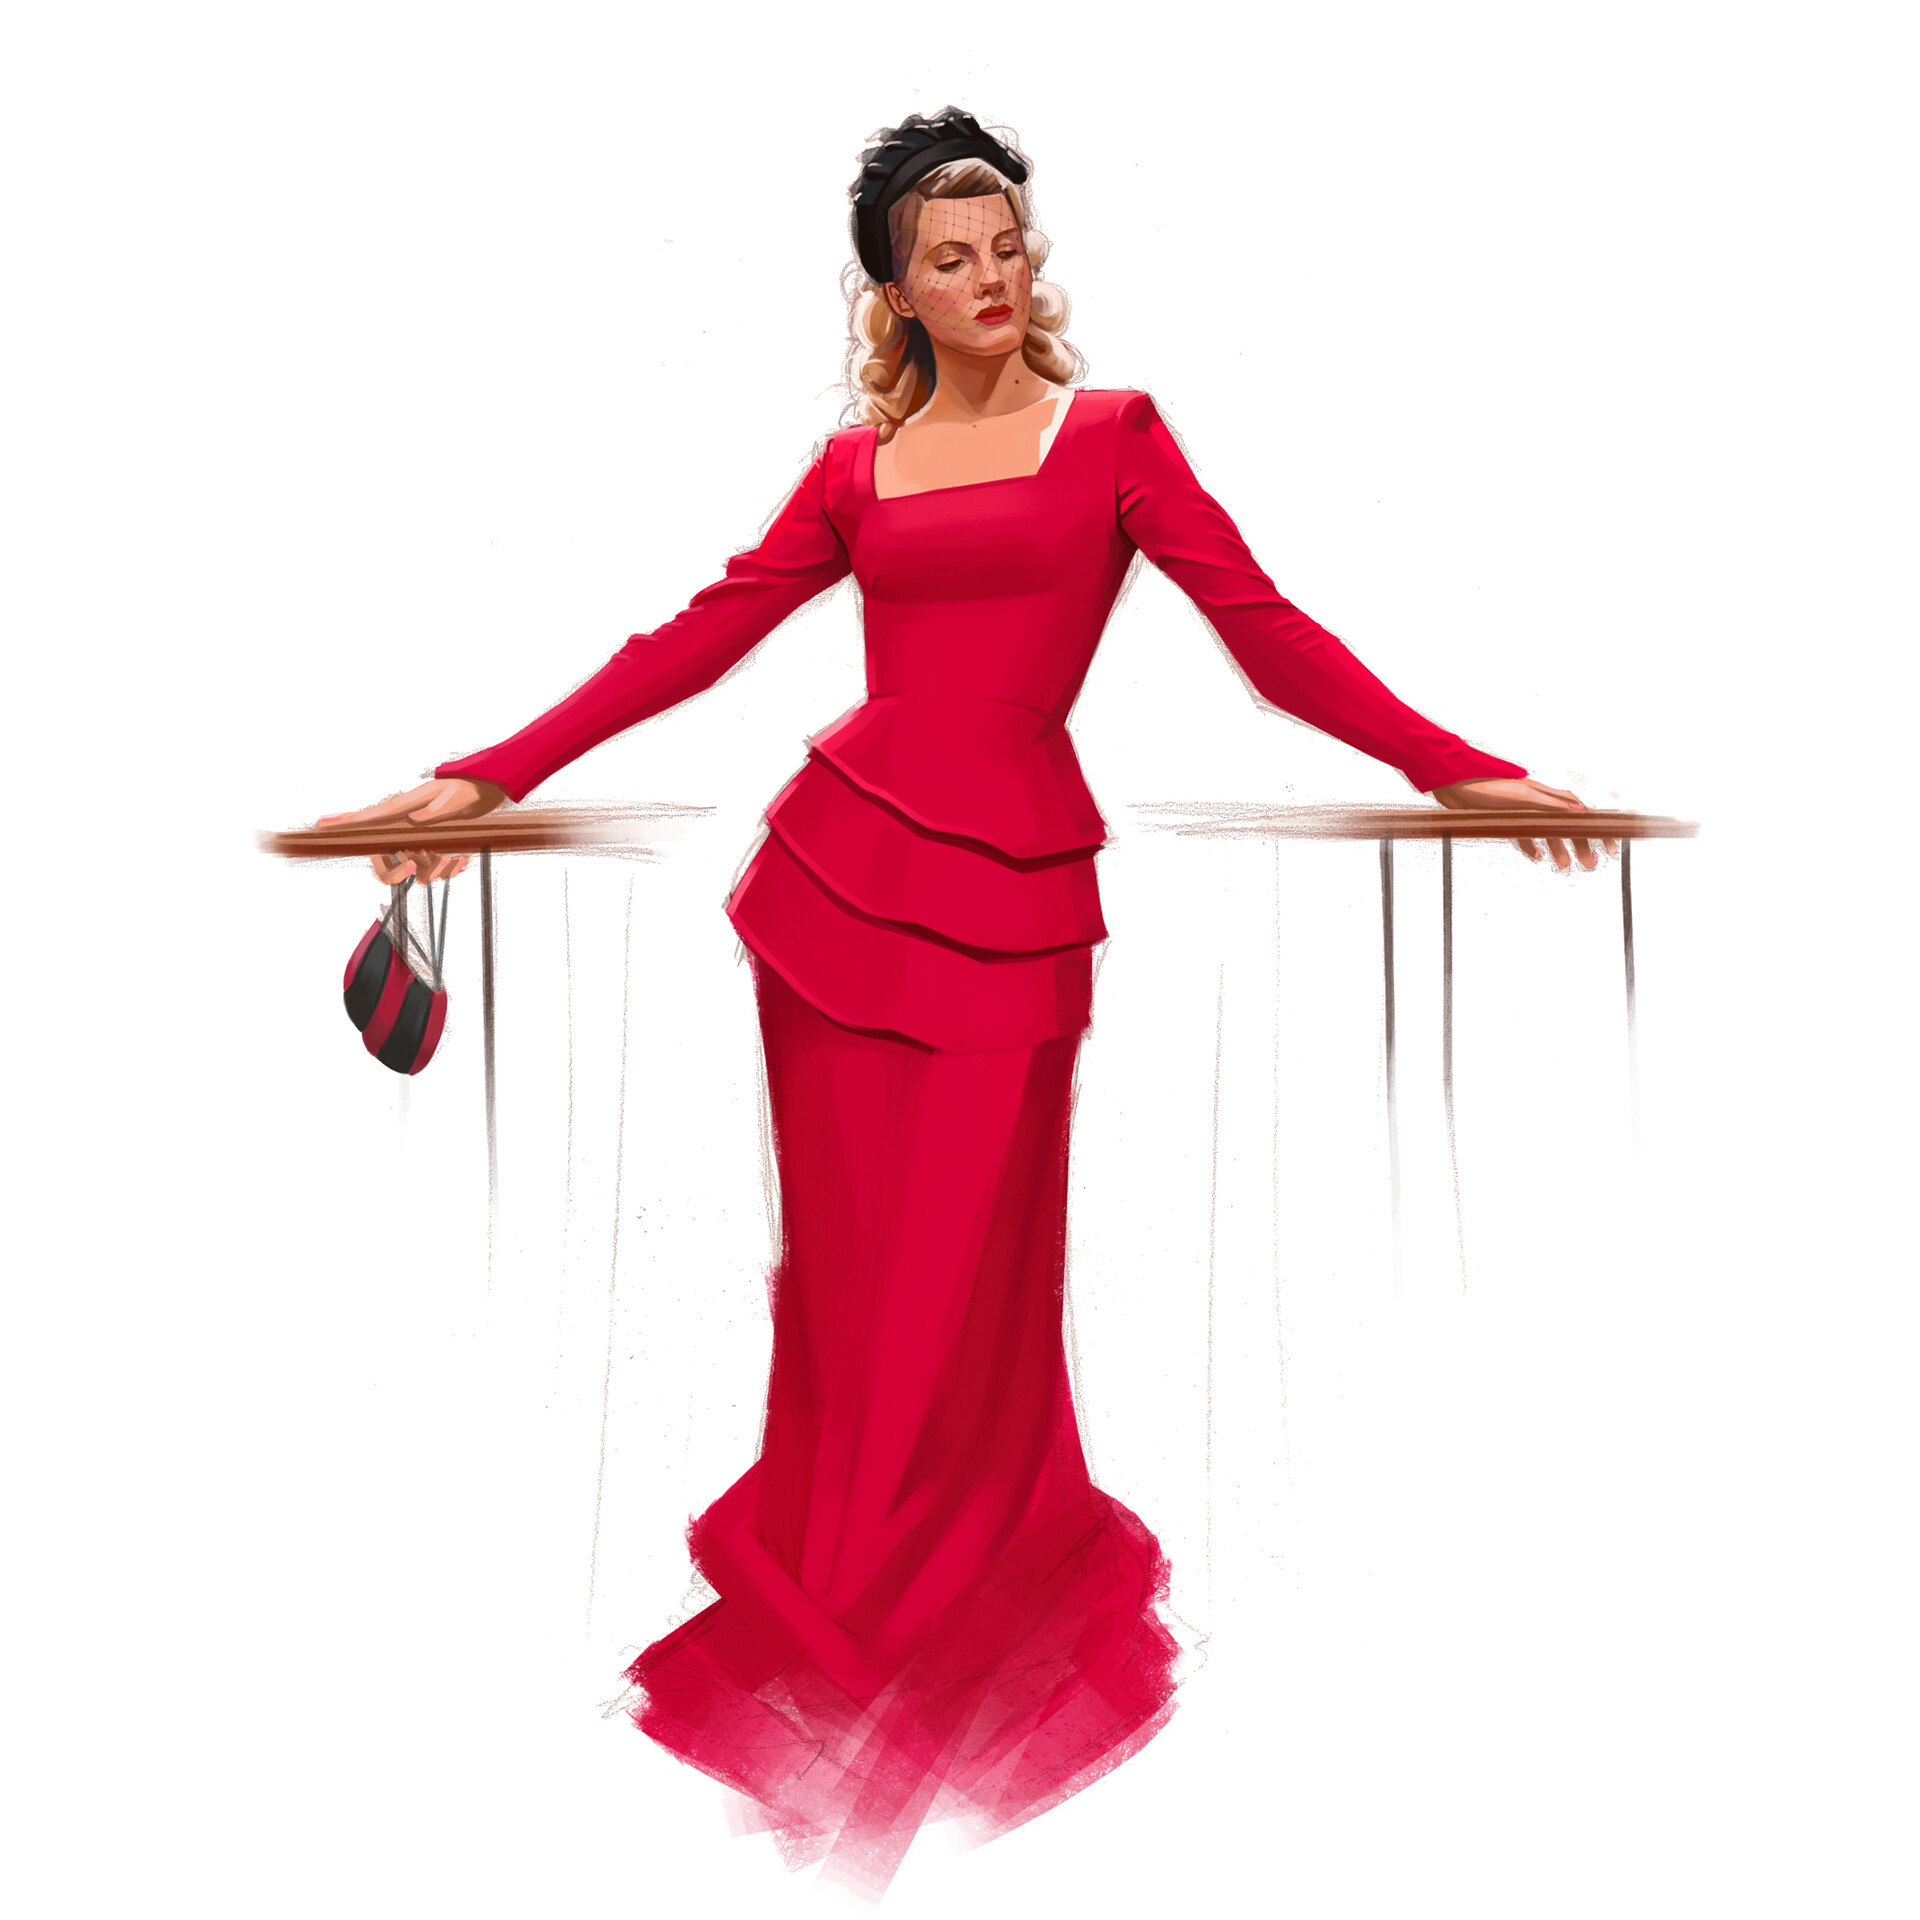 Shosanna Dreyfus Red Dress